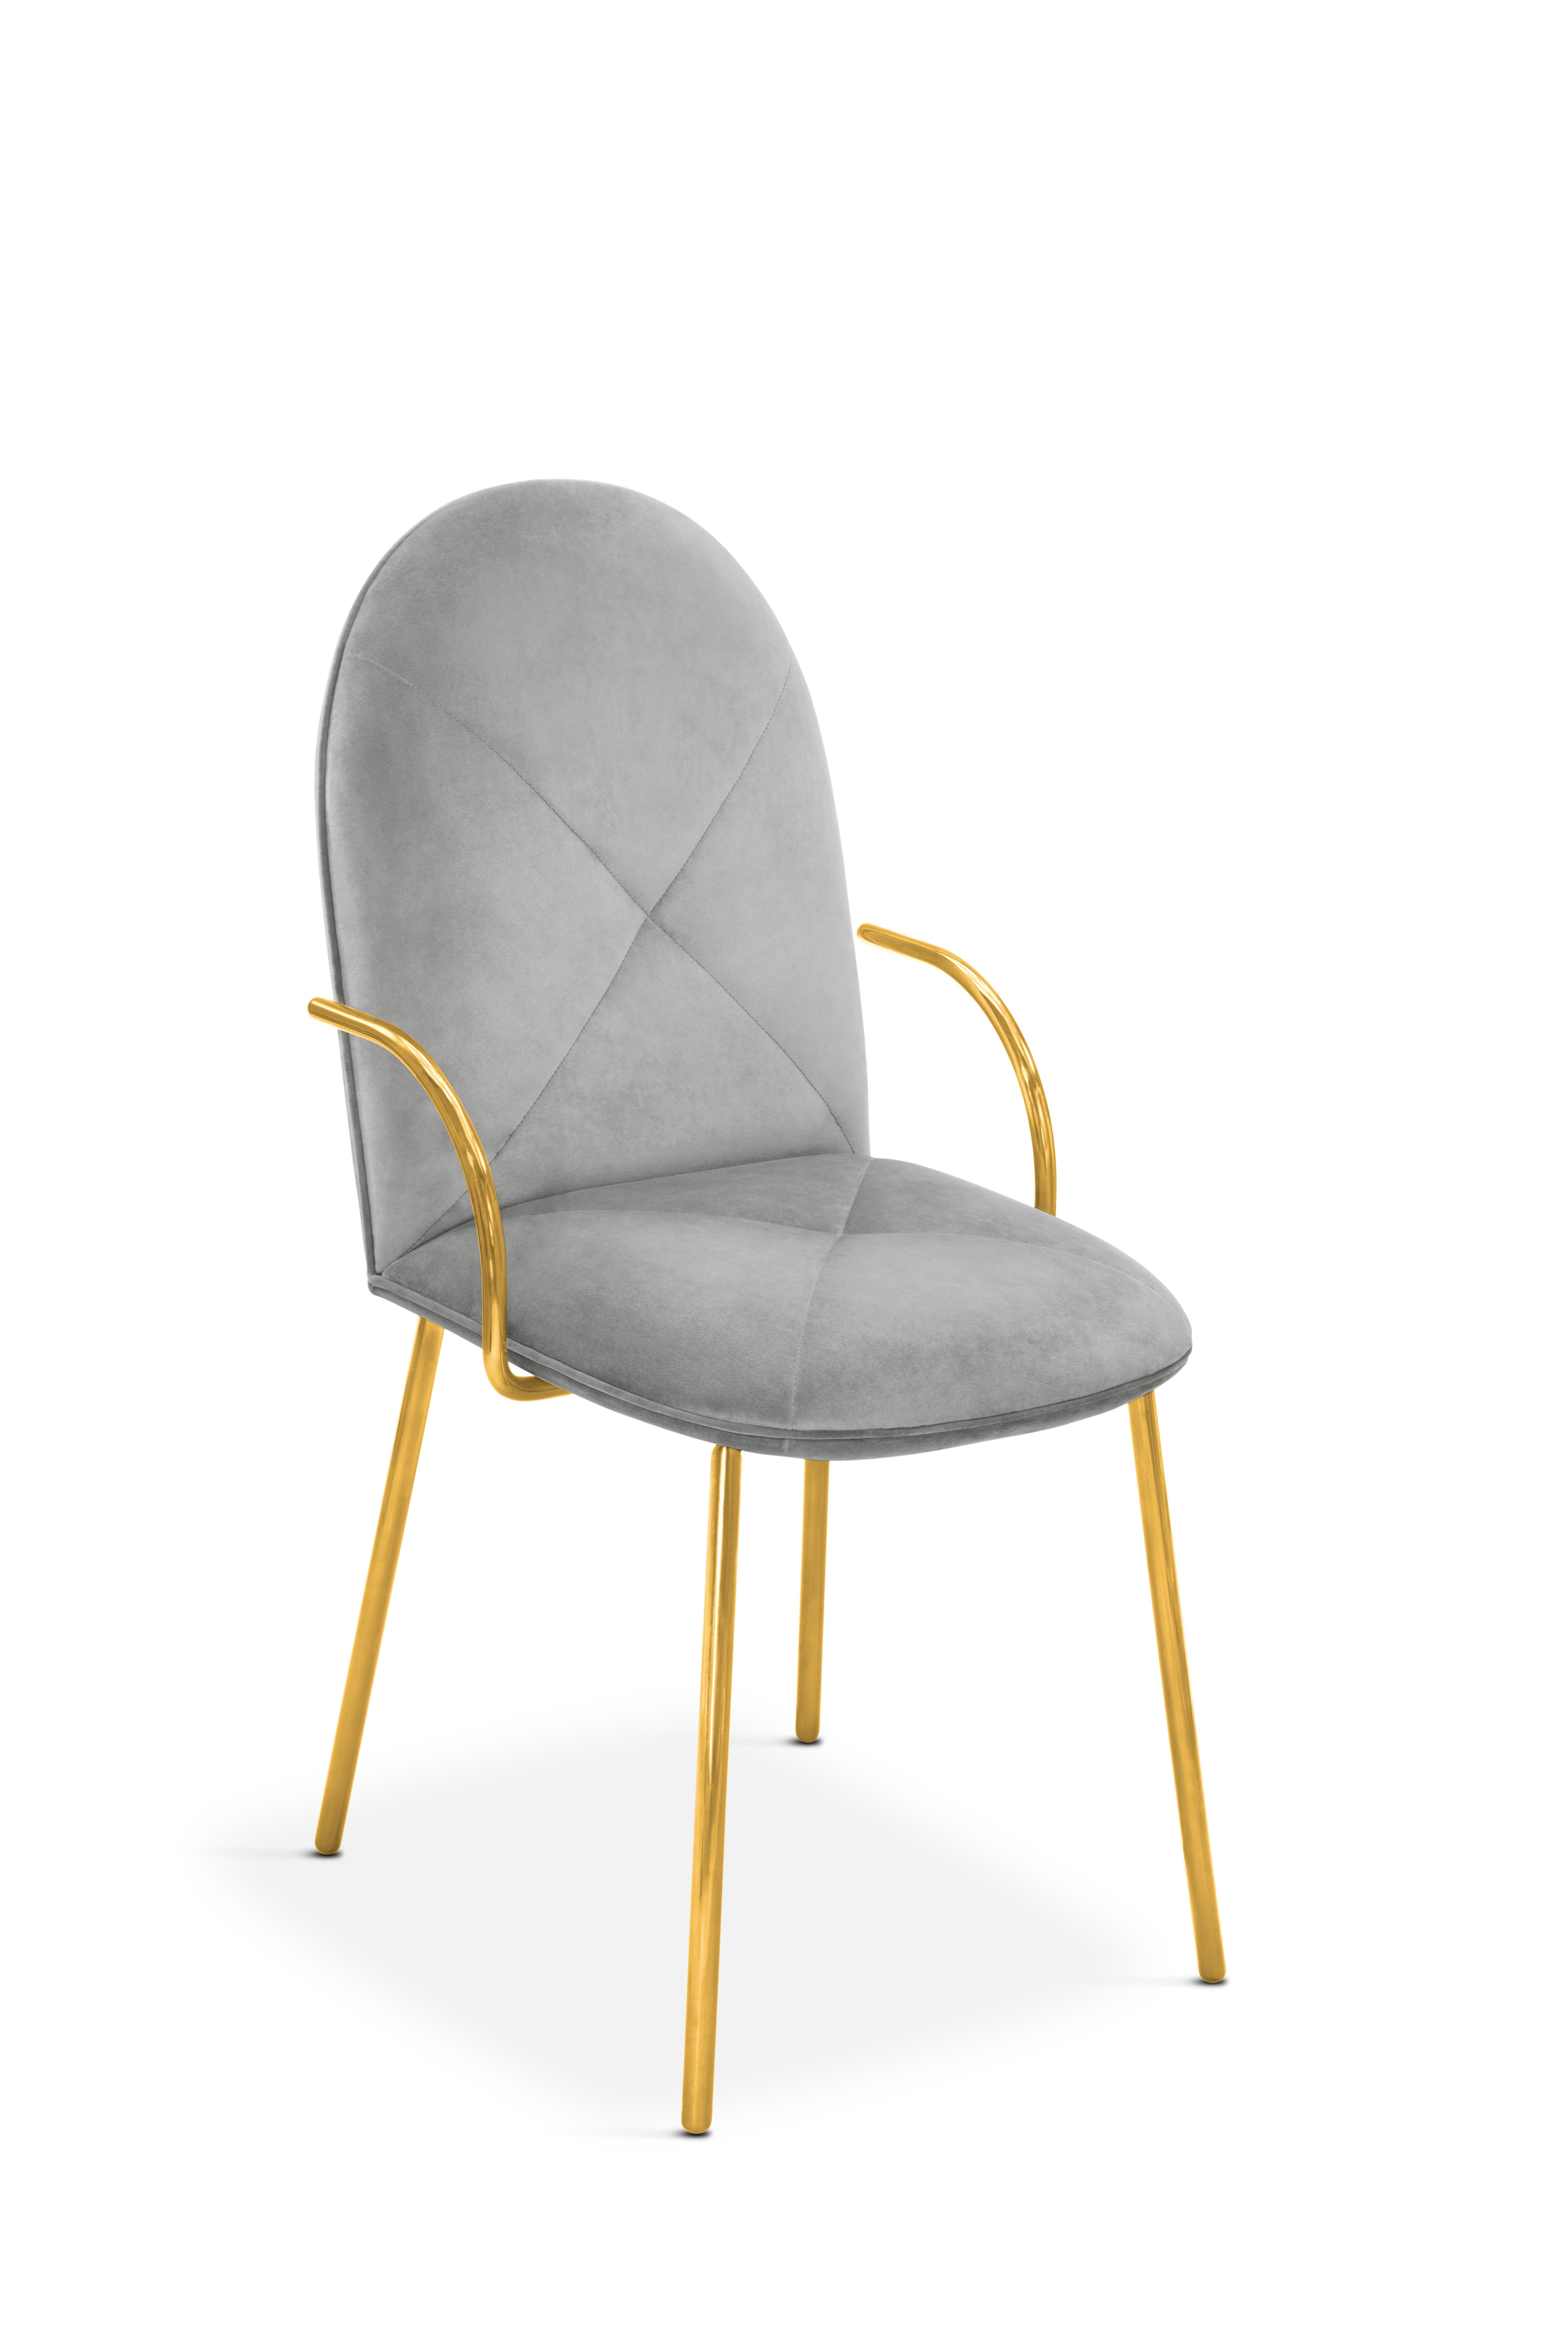 Orion Dining Chair with Plush Gray Velvet and Gold Arms von Nika Zupanc ist ein schicker Stuhl aus grauem Samt und goldenem Metall. Er ist mit zarten Linien für Komfort und Stil gestaltet.

Nika Zupanc, eine auffallend renommierte slowenische